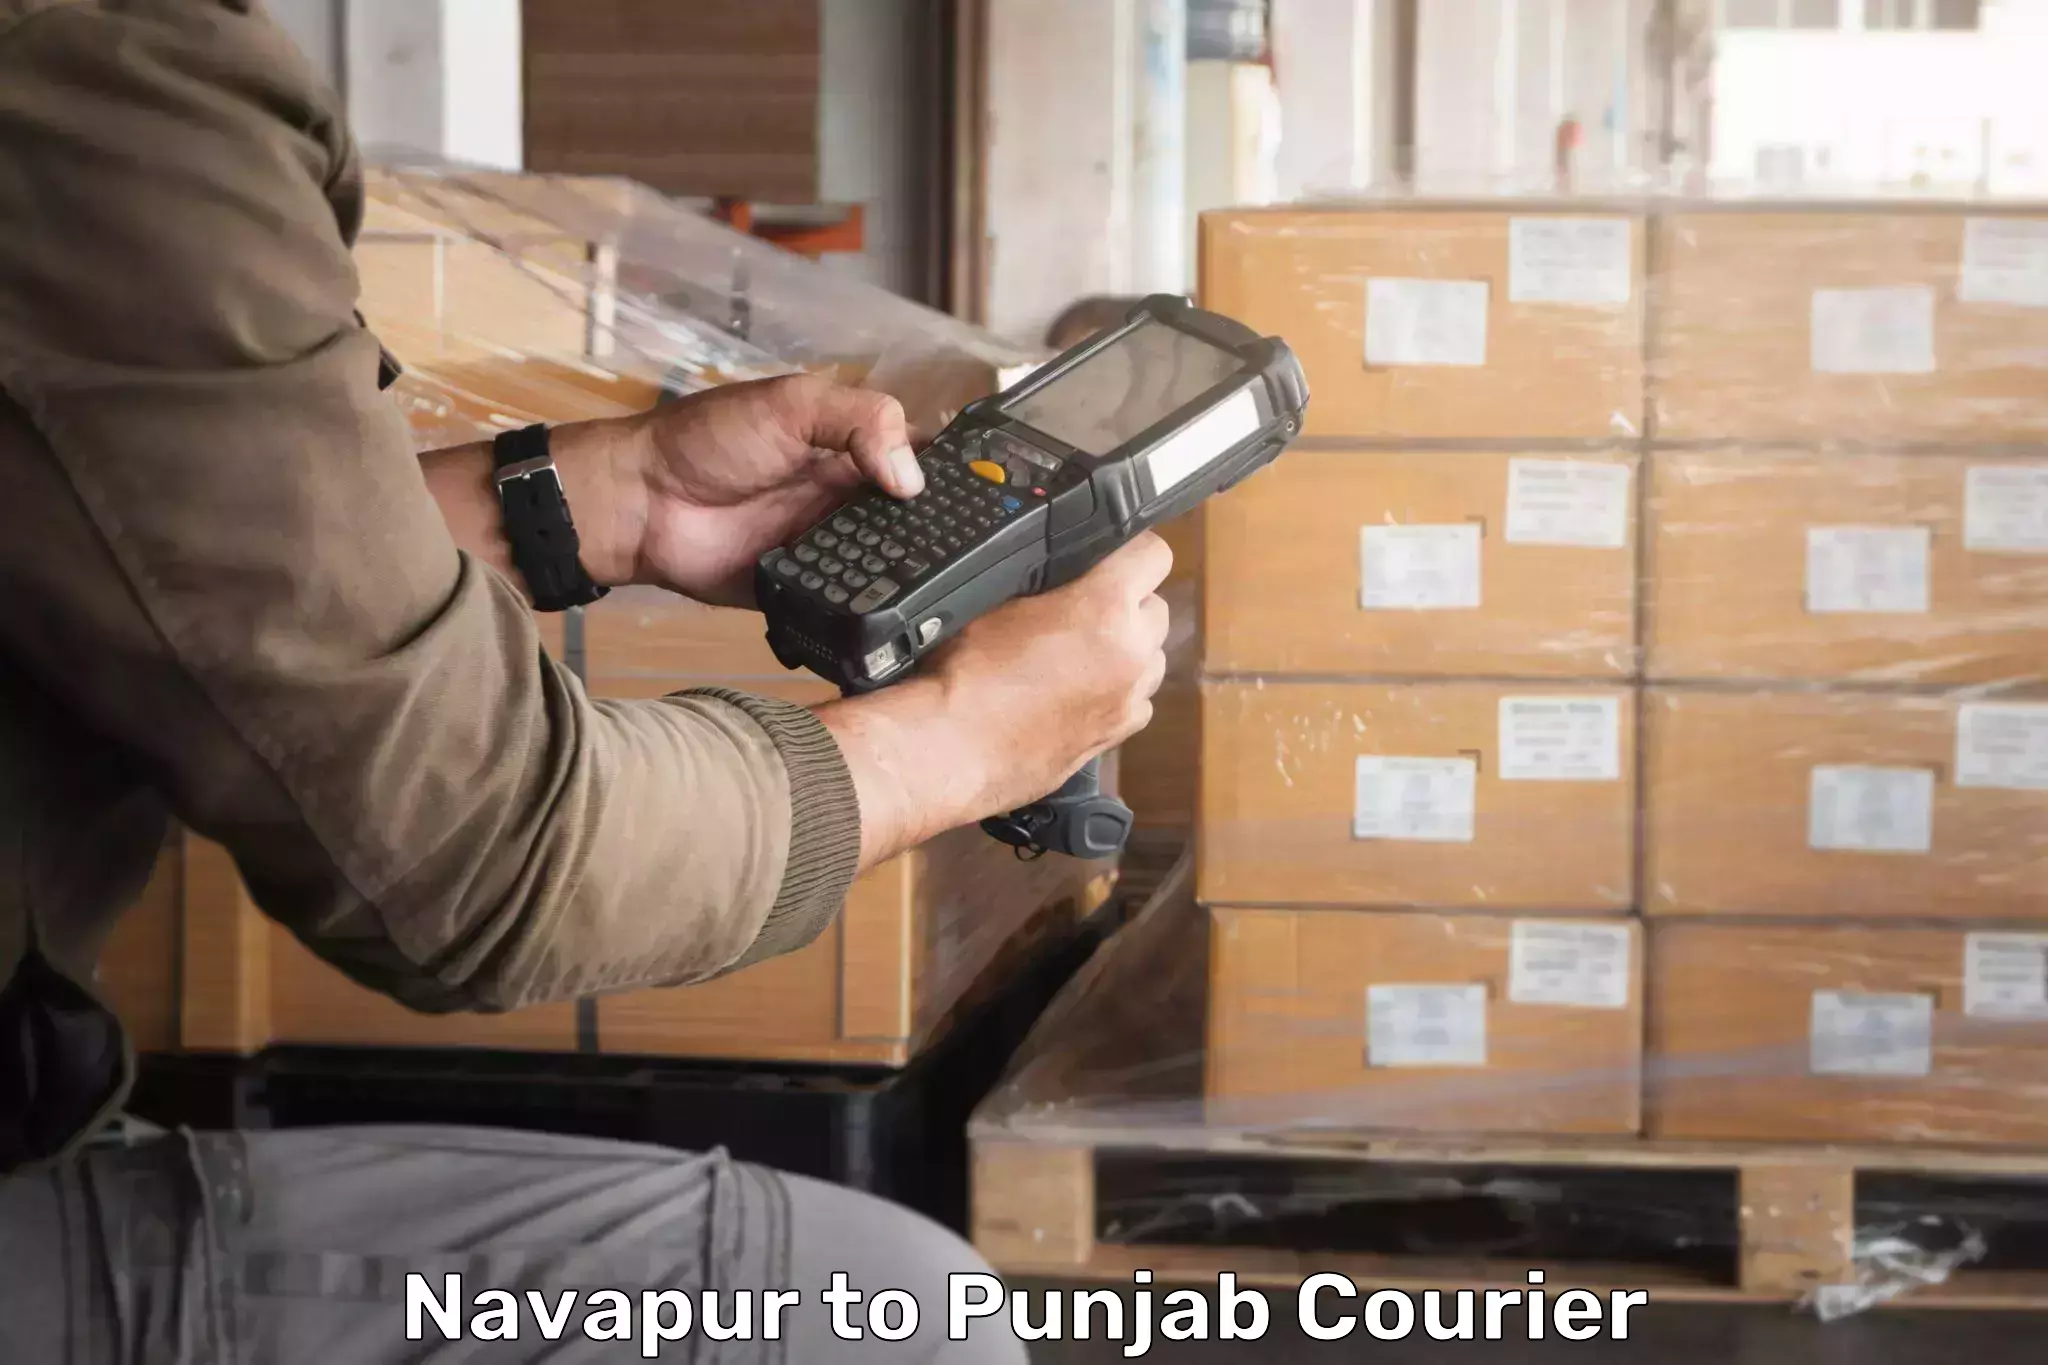 Flexible delivery scheduling Navapur to Zirakpur